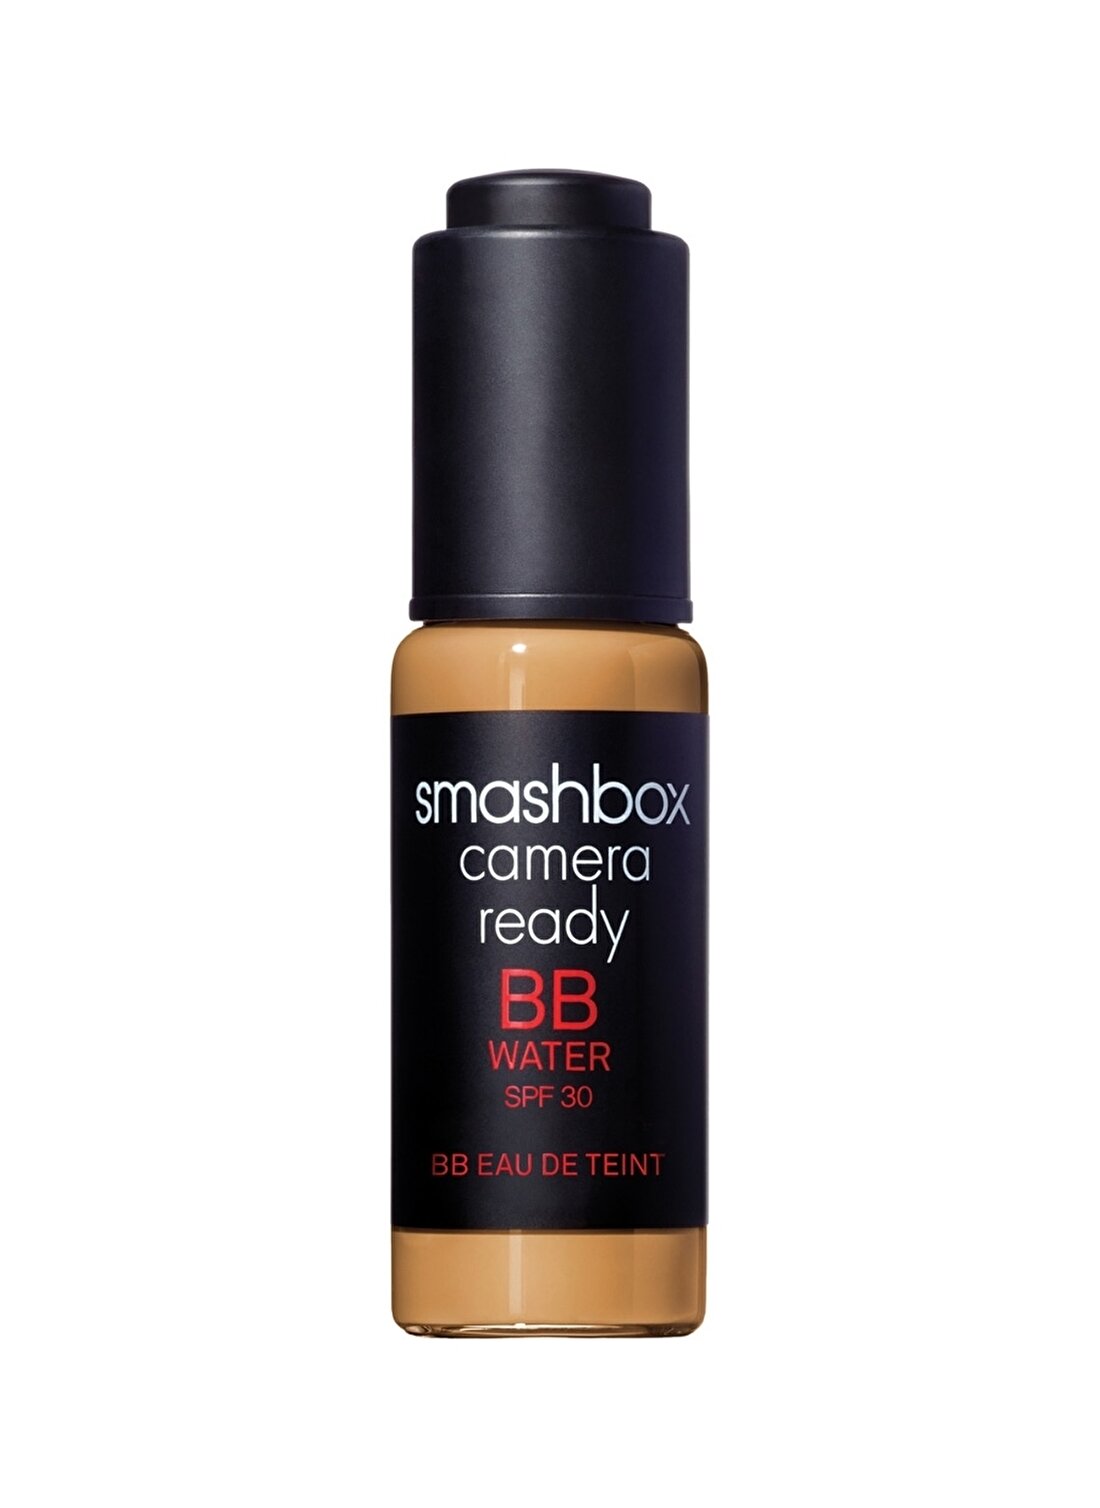 Smashbox Camera Ready BB Water SPF 30 -Light/Medium